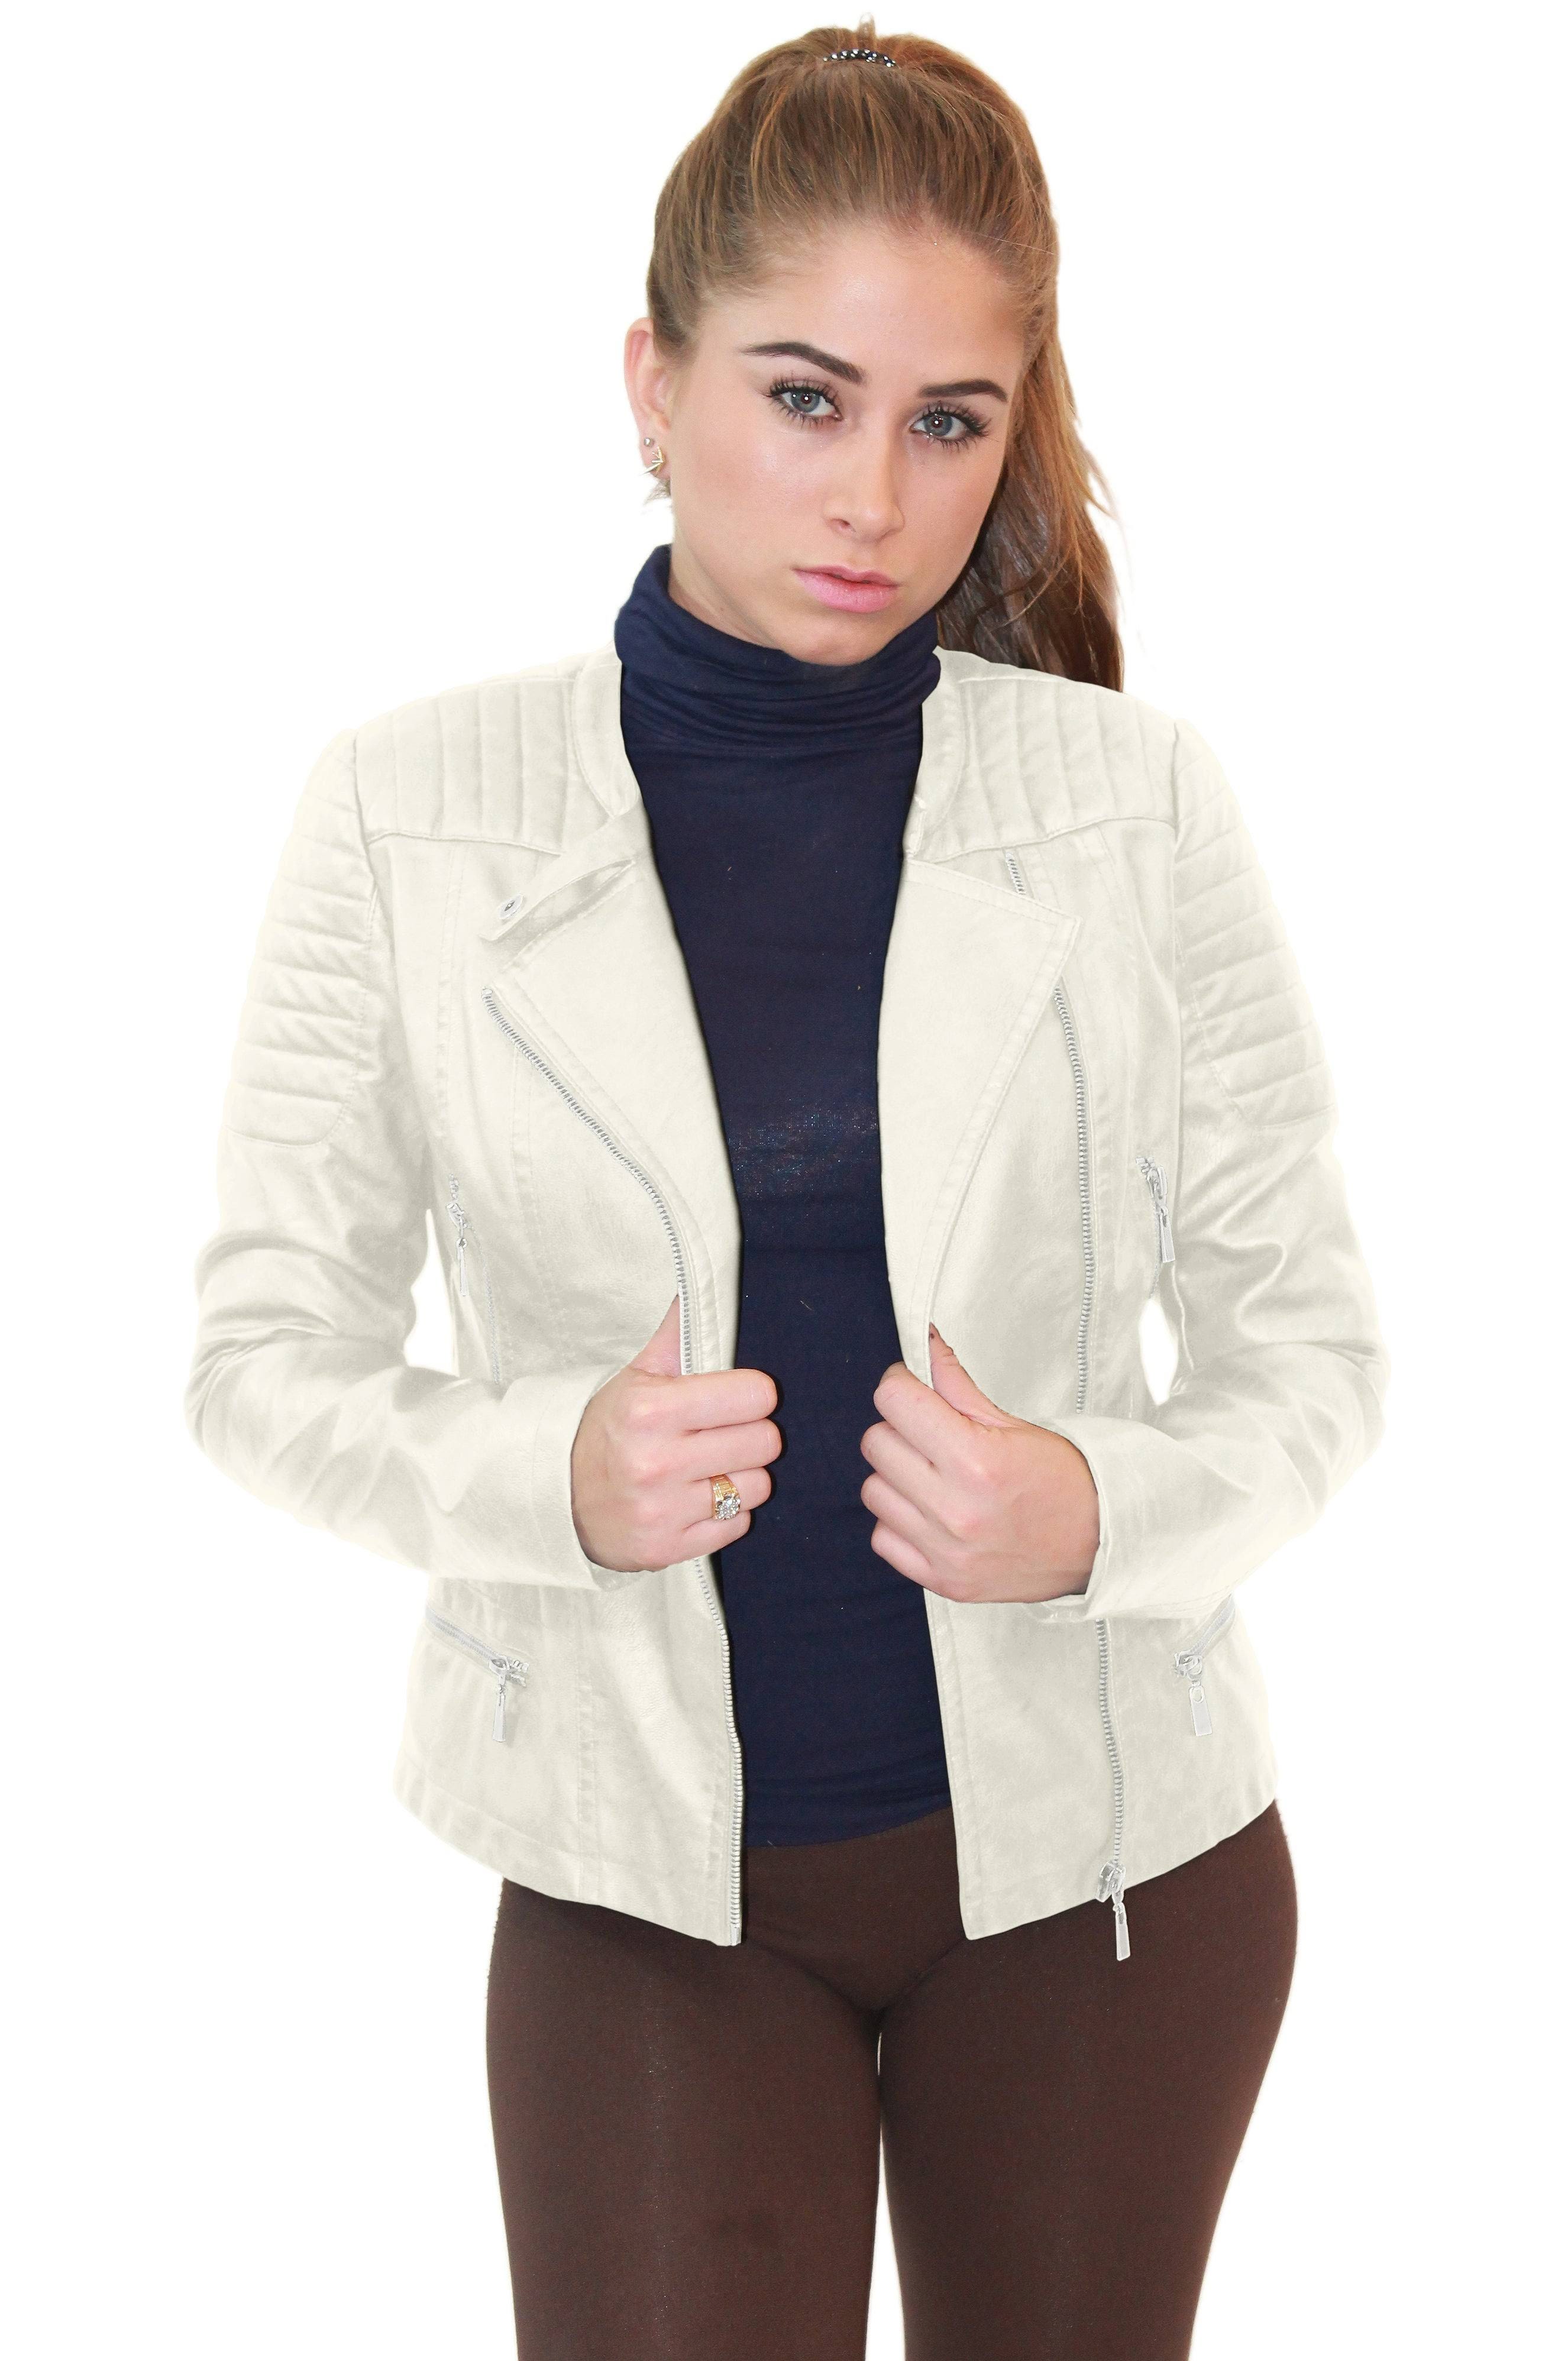 Edgy Biker Design White Leather Jacket | Image